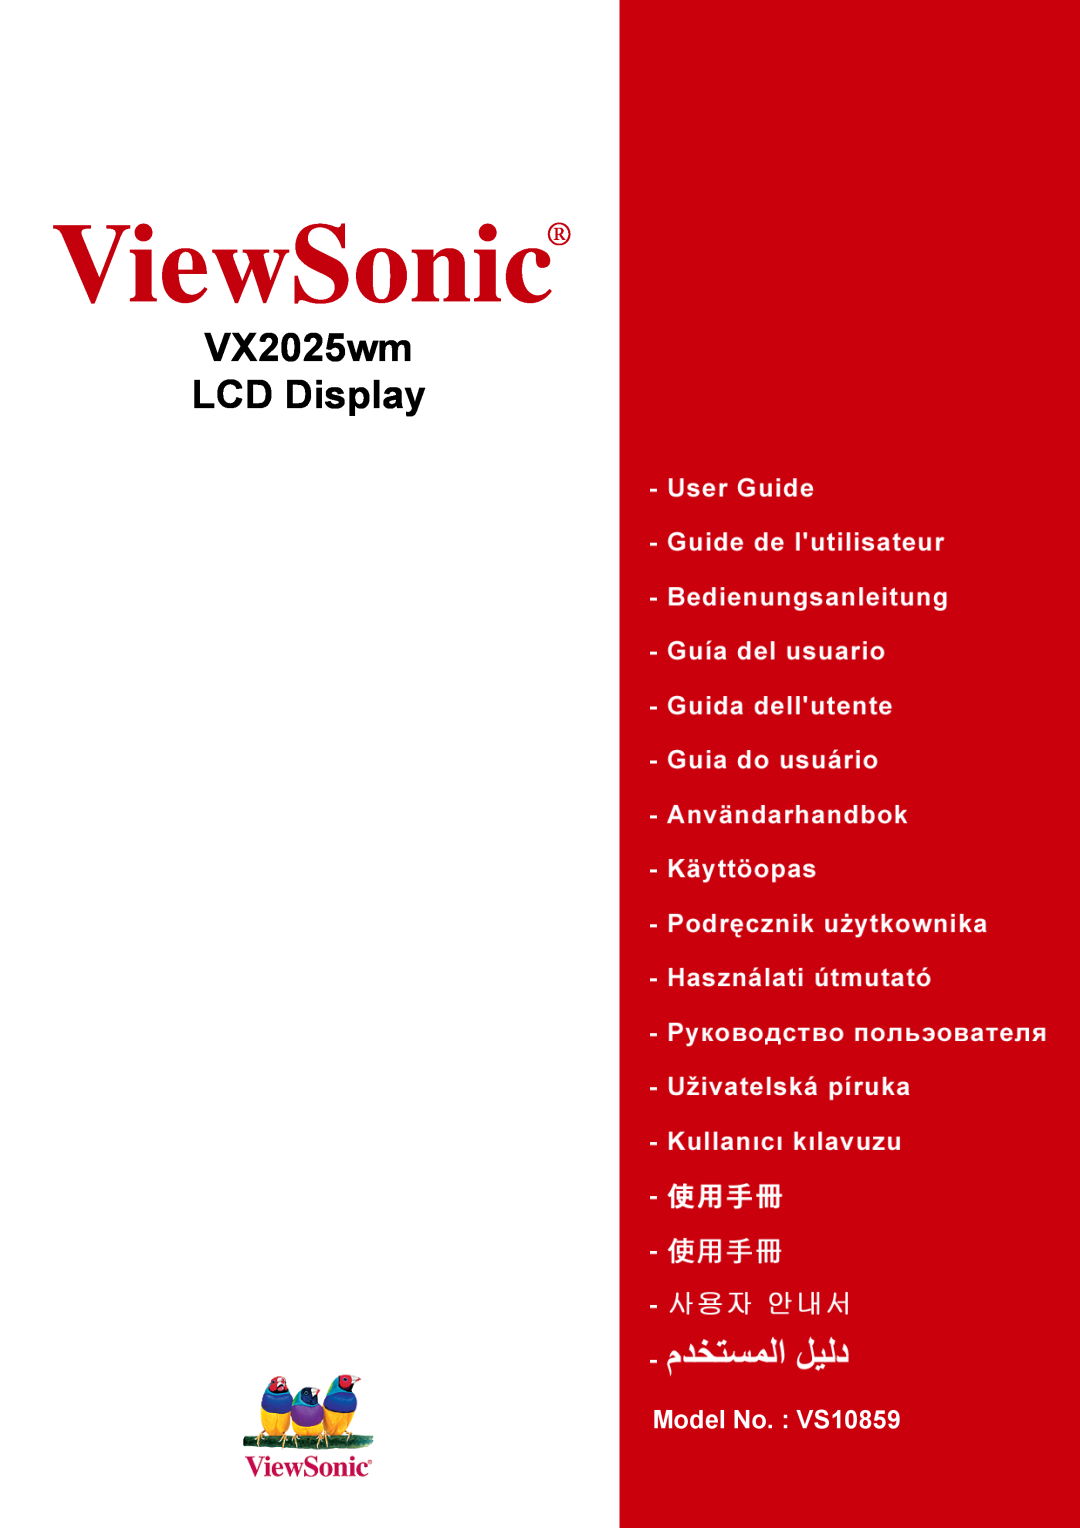 ViewSonic manual ViewSonic, VX2025wm LCD Display, Model No. VS10859 